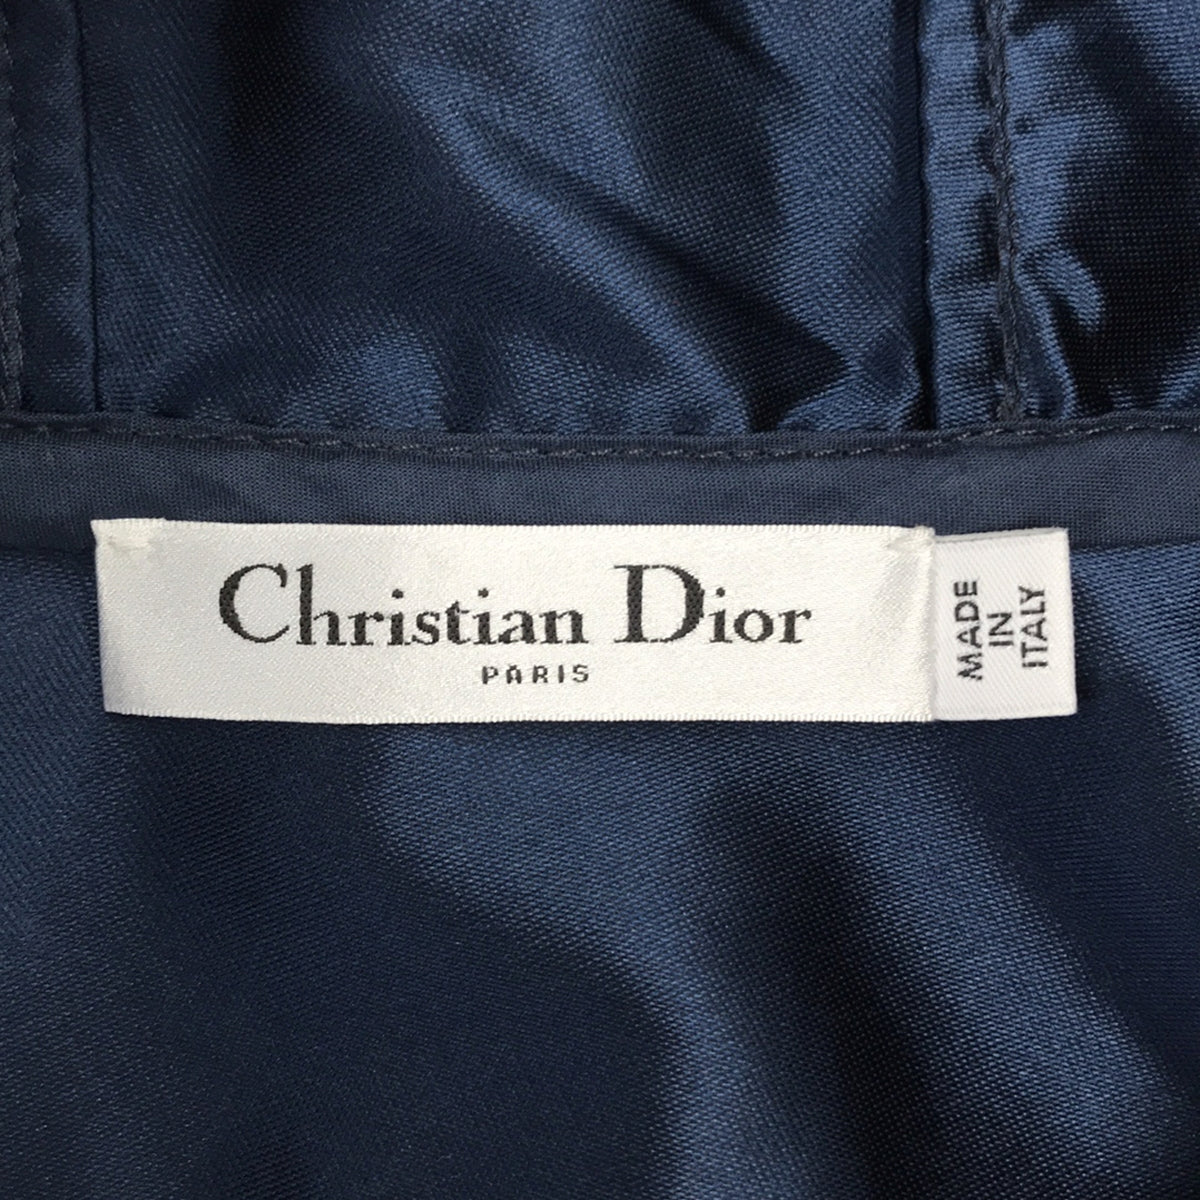 Christian Dior / クリスチャンディオール | バックロゴ ハーフジップ フーデッドワンピース | 34 | レディース